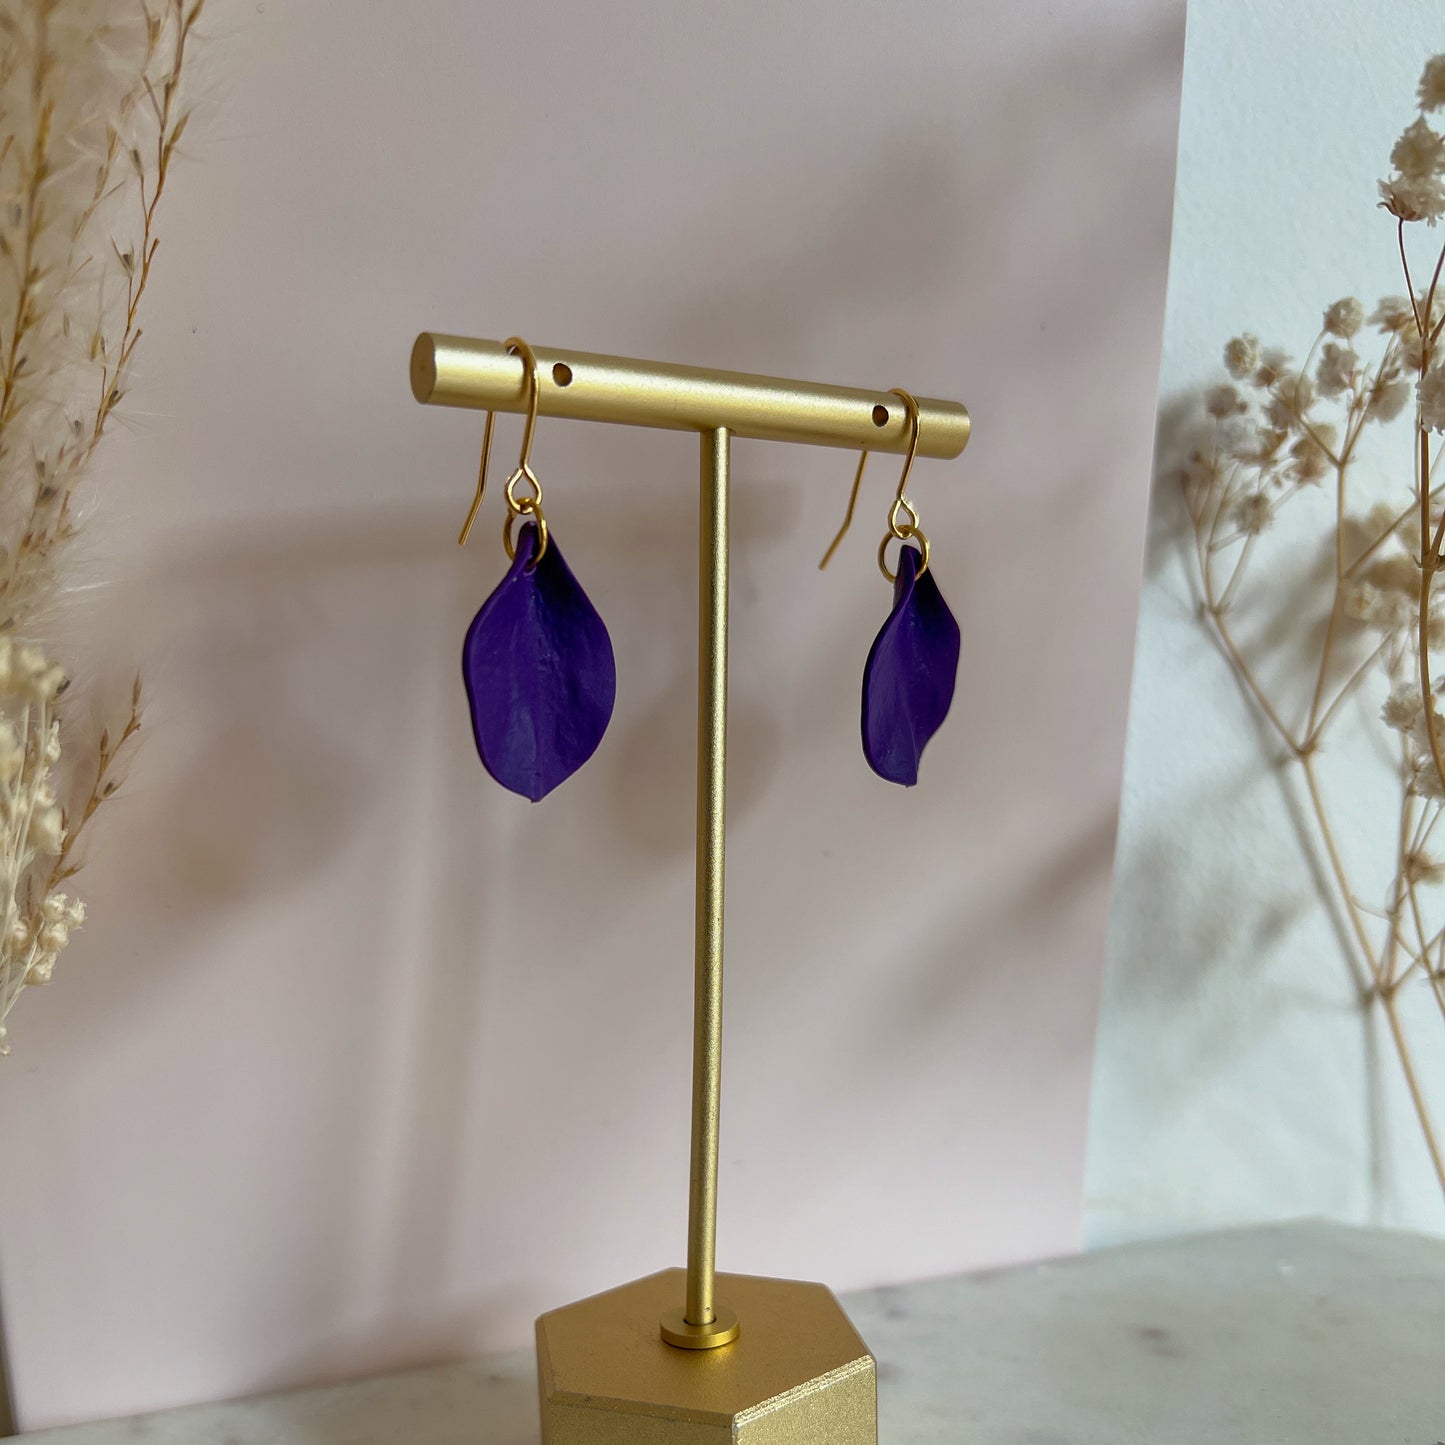 DELEN | small rose petal hook earrings in violet purple